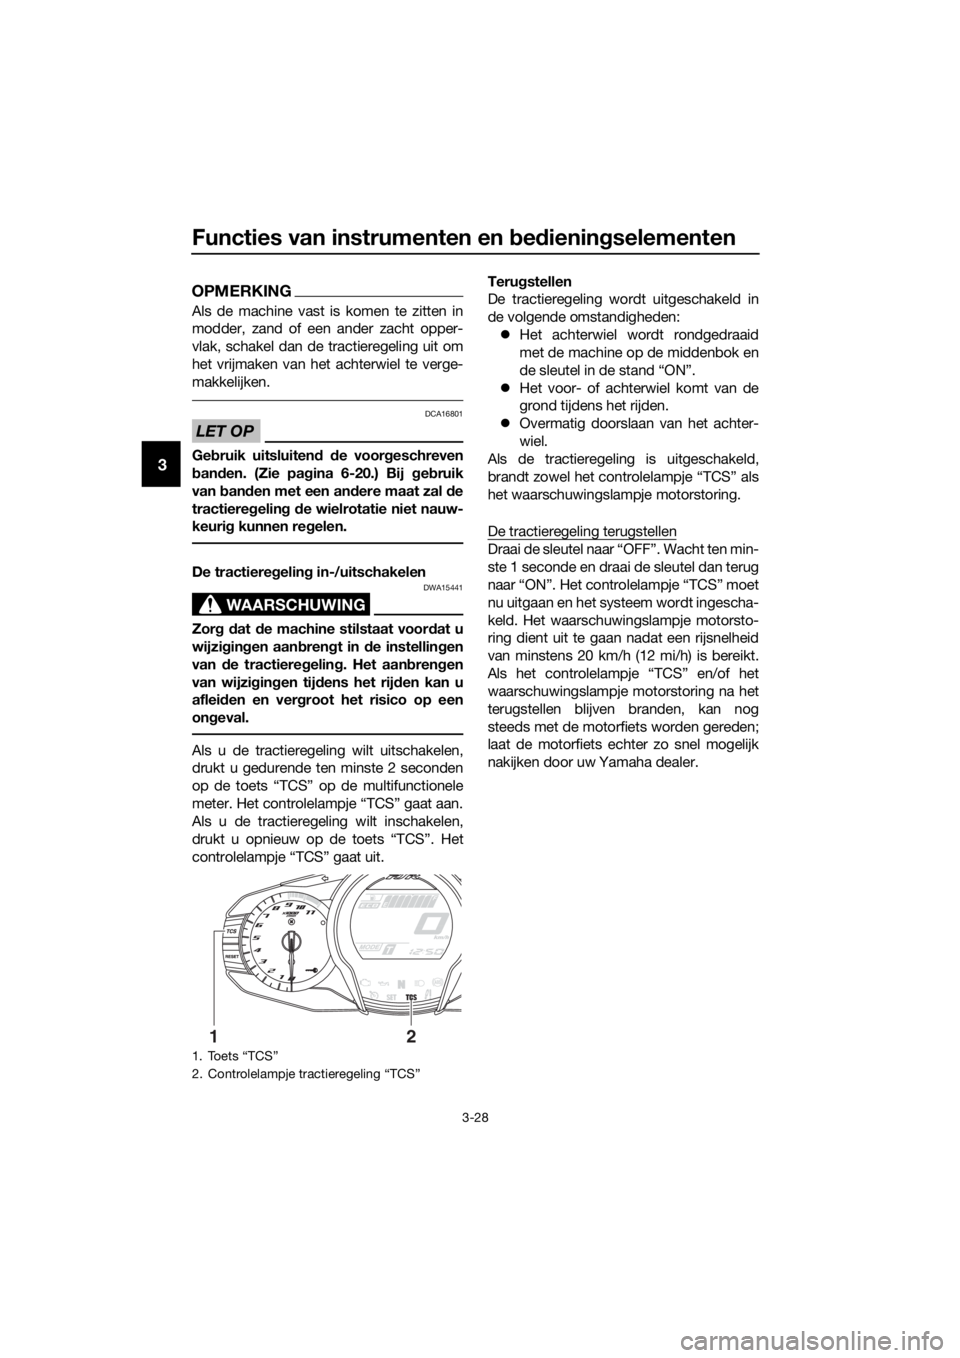 YAMAHA FJR1300AE 2016  Instructieboekje (in Dutch) Functies van instrumenten en bed iening selementen
3-28
3
OPMERKING
Als de machine vast is komen te zitten in
modder, zand of een ander zacht opper-
vlak, schakel dan de tractieregeling uit om
het vri